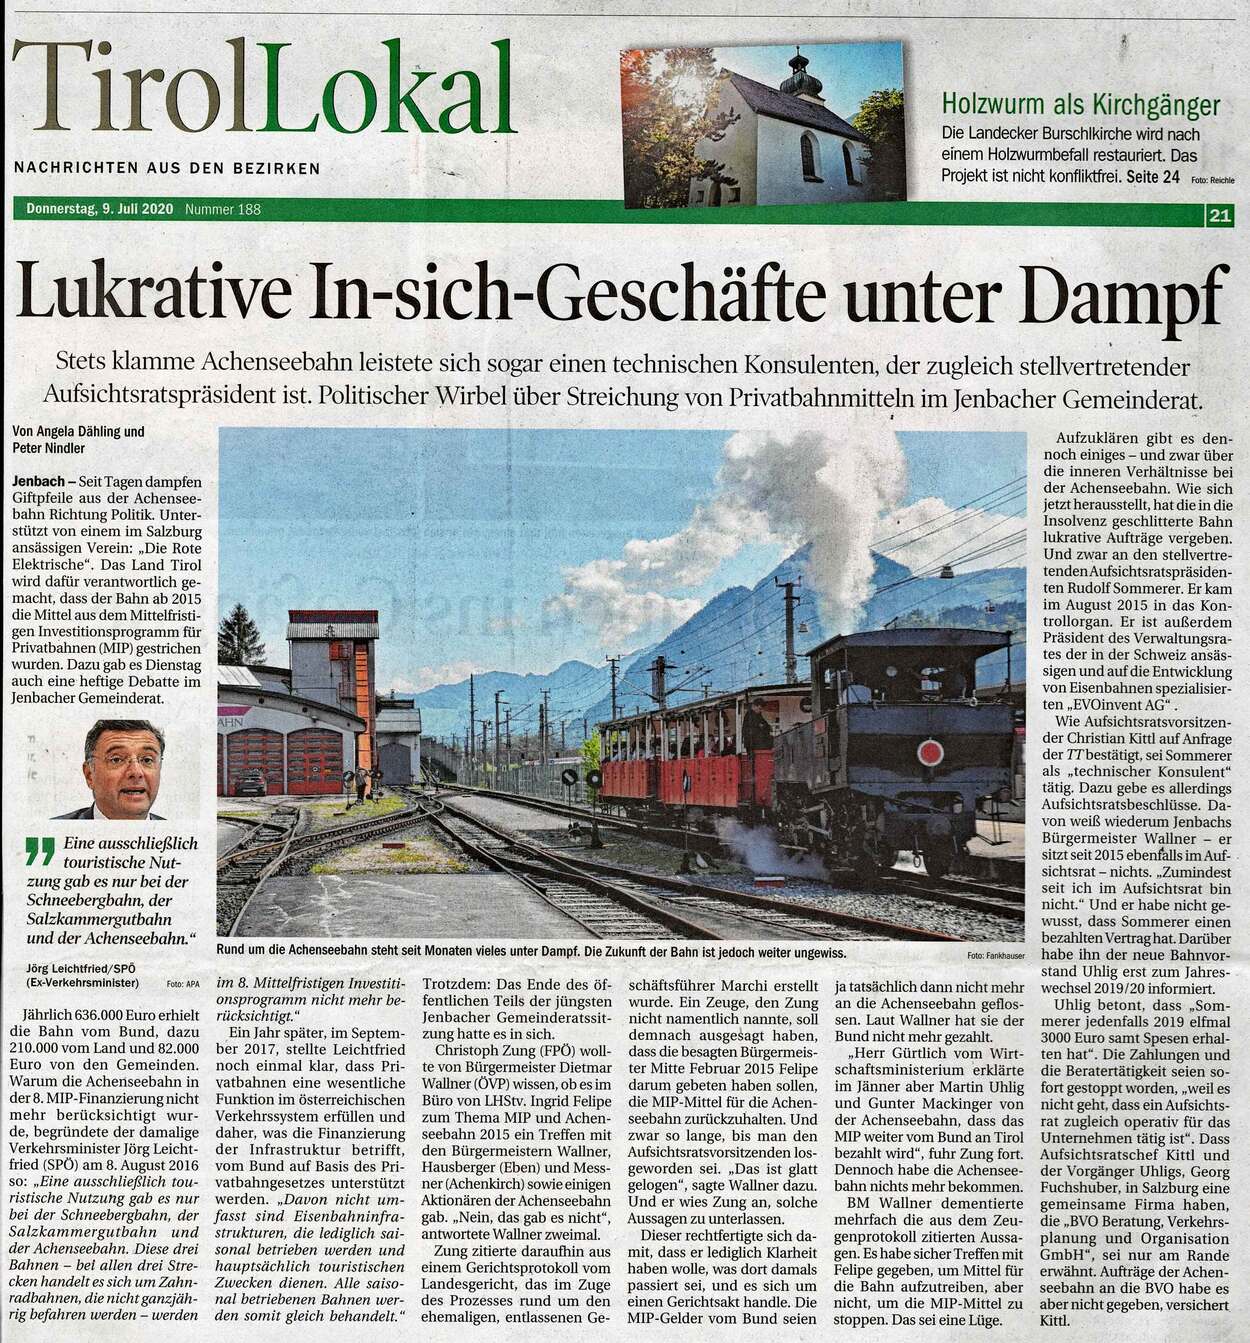 Achenseebahn-Berichte Tiroler Tageszeitung